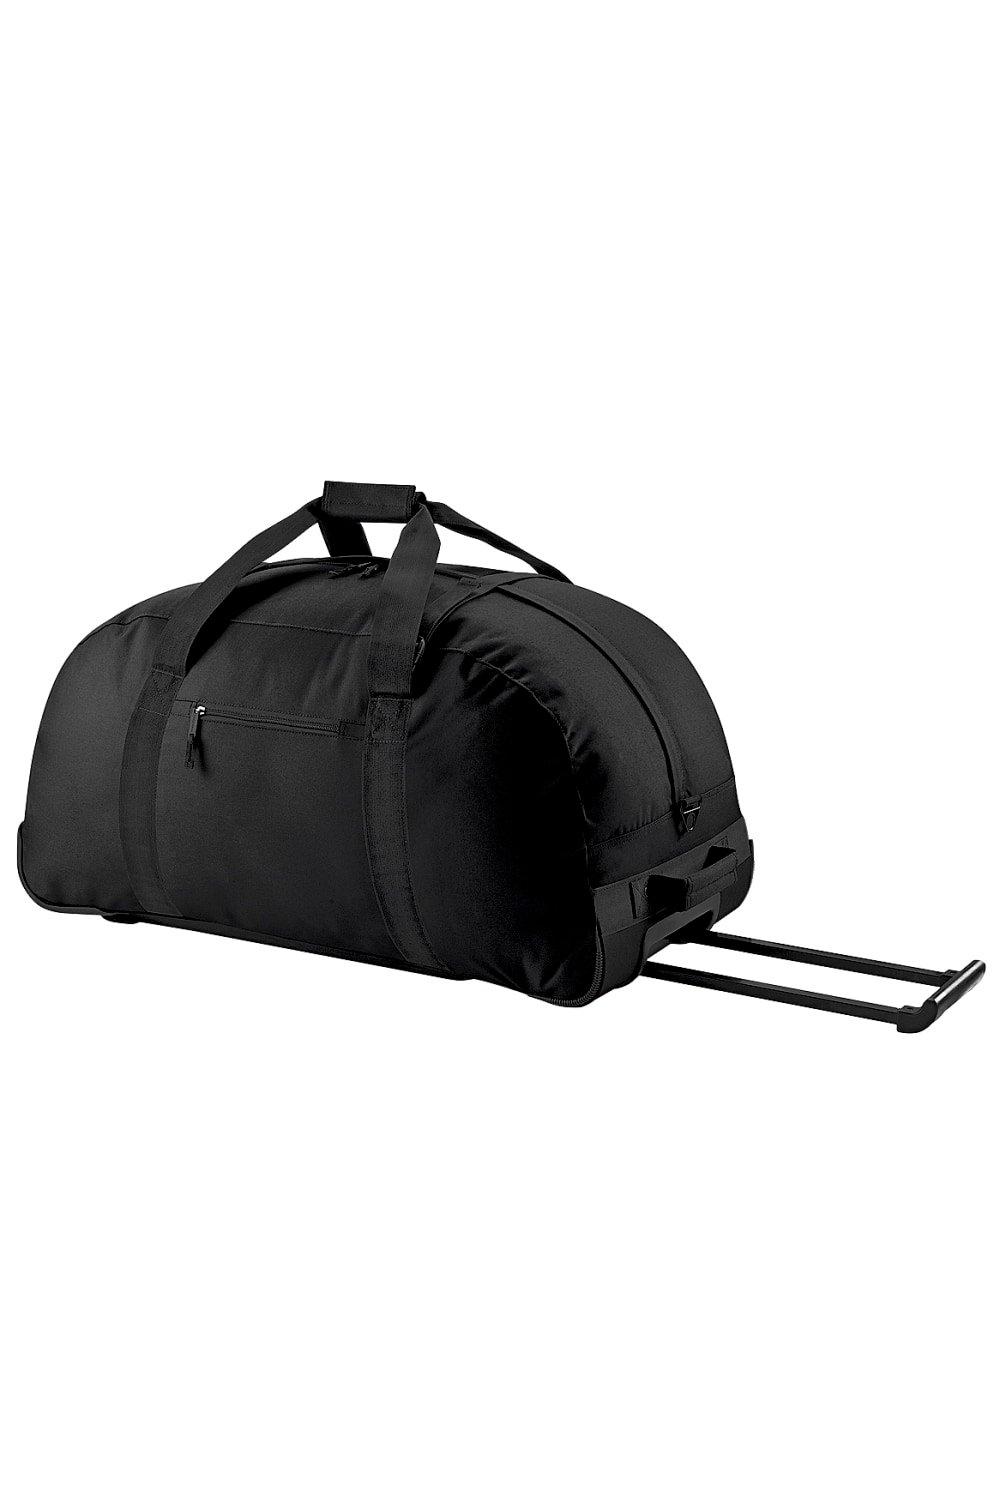 цена Классическая дорожная сумка на колесиках/спортивная дорожная сумка Bagbase, черный